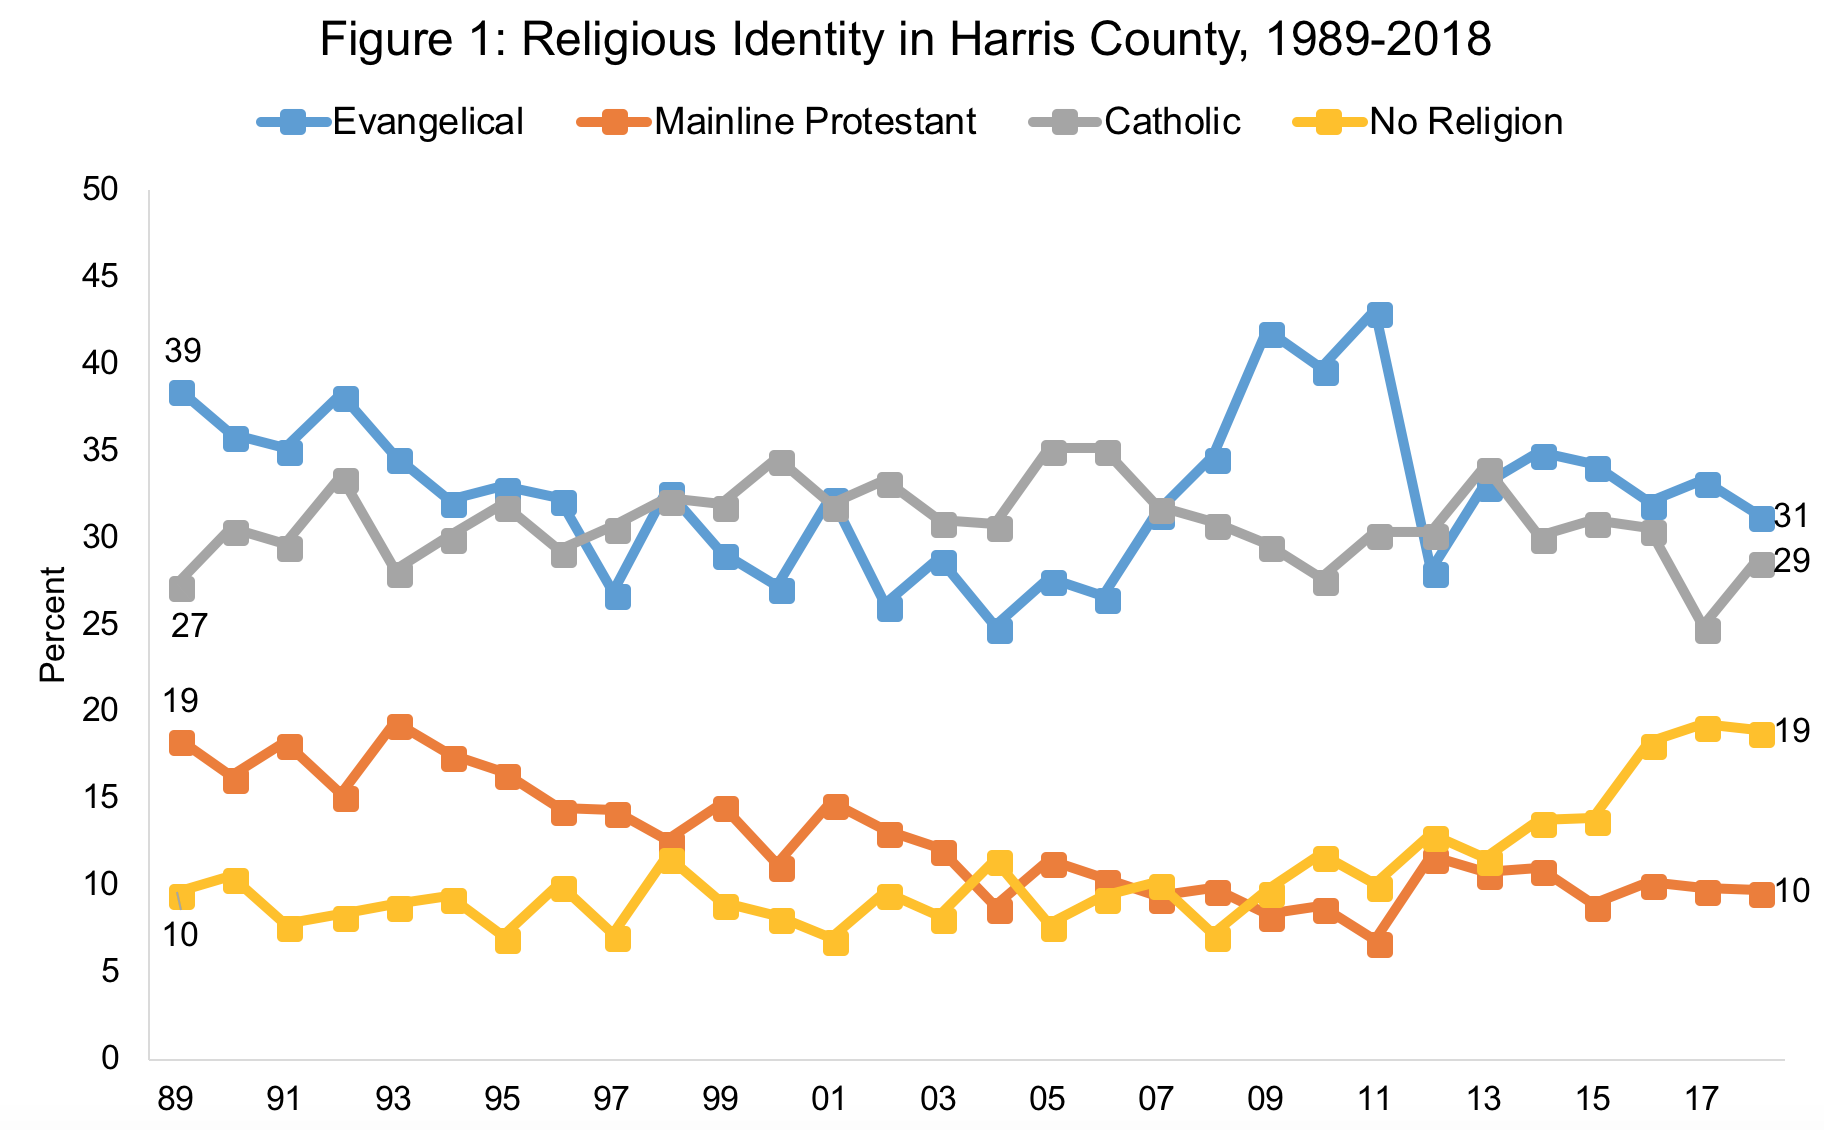 Religious identity in Harris County